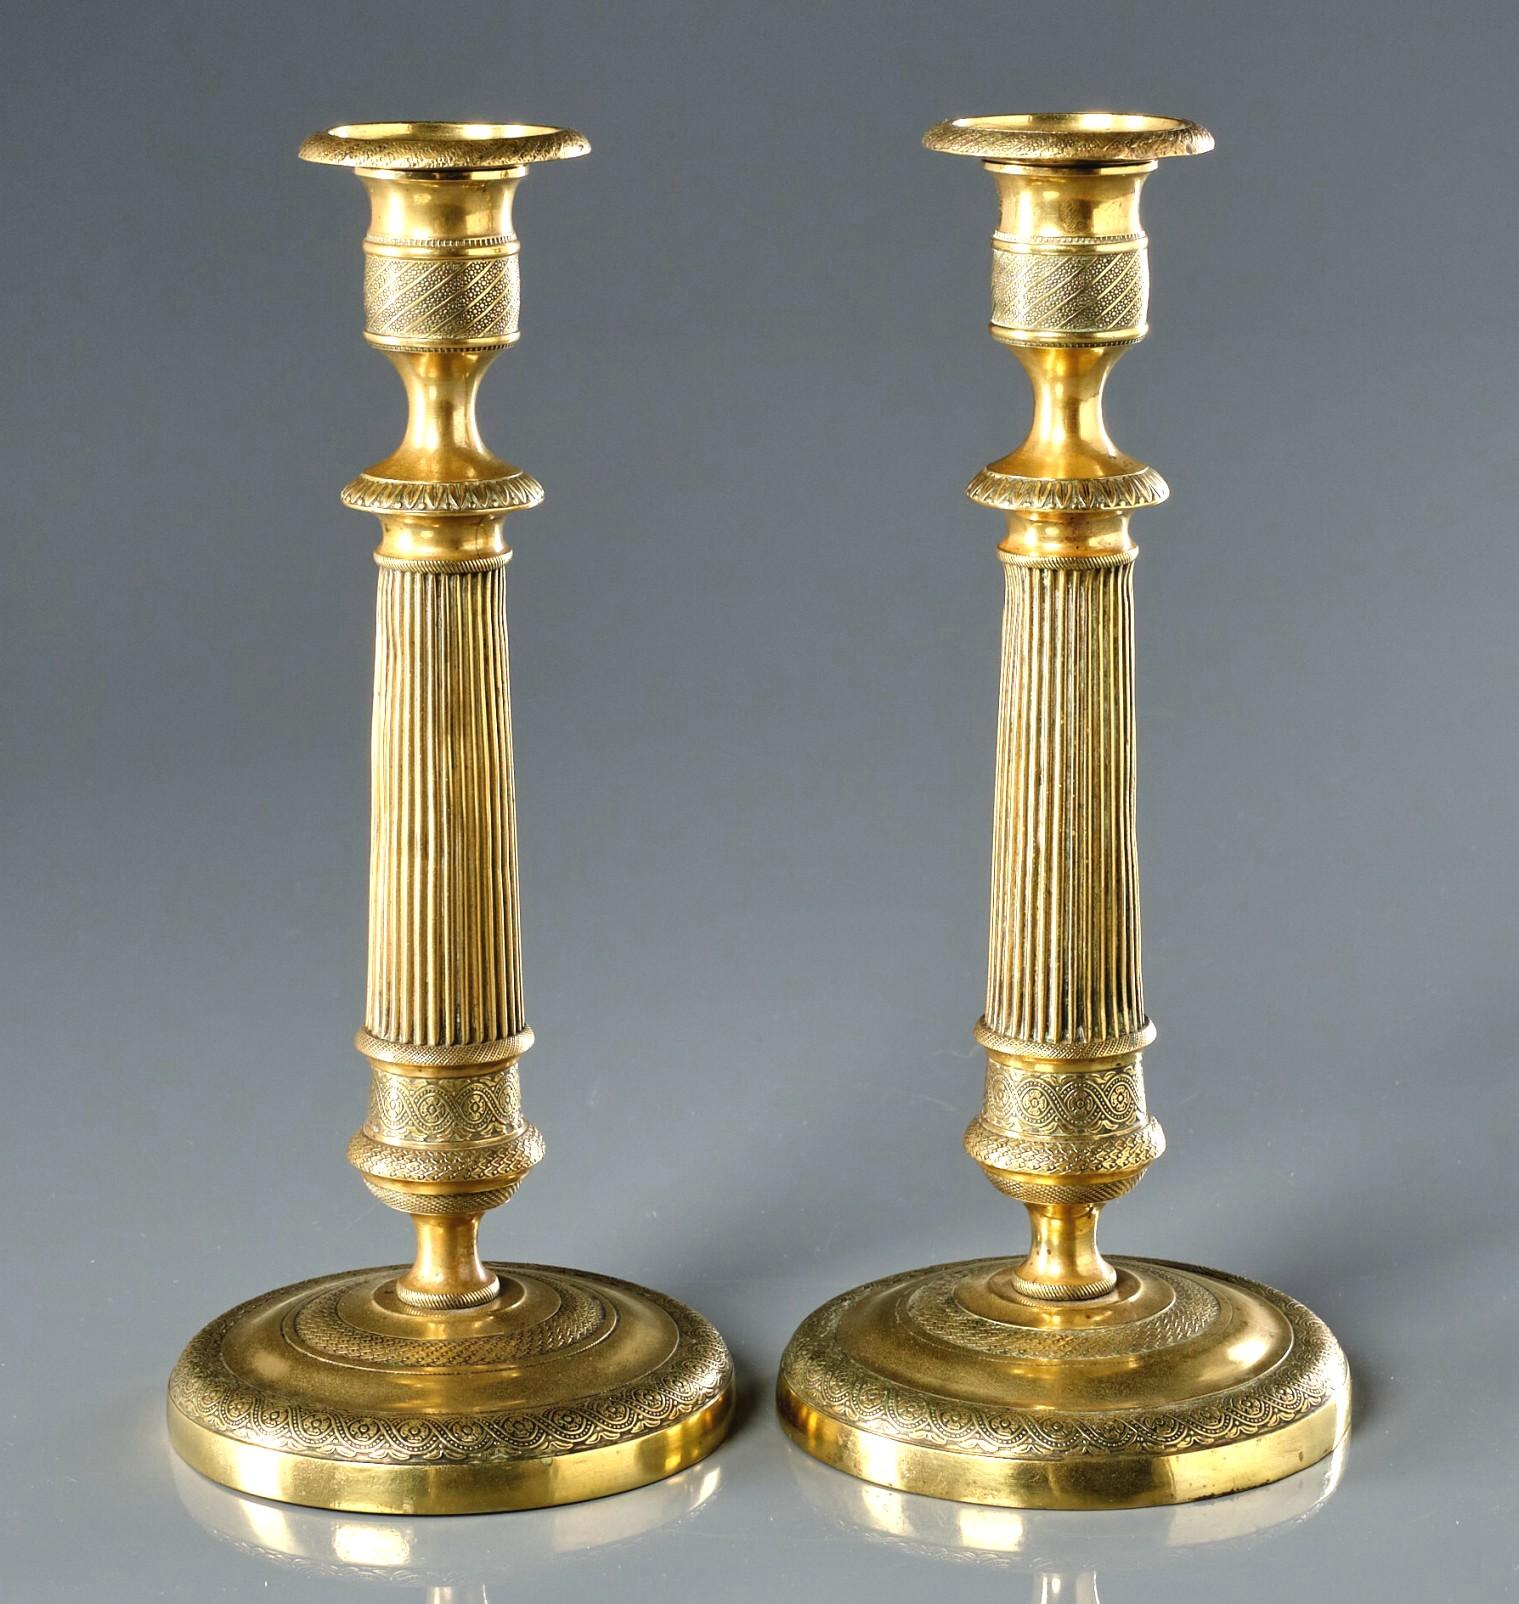 Ein sehr hübsches und hohes Paar vergoldeter Messing-Kerzenständer aus dem frühen 19. 
Beide zeigen geriffelte Säulen, die sich von runden, mit fein ziselierten Motiven verzierten Sockeln erheben, und ähnlich adressierte, urnenförmige Tüllen mit